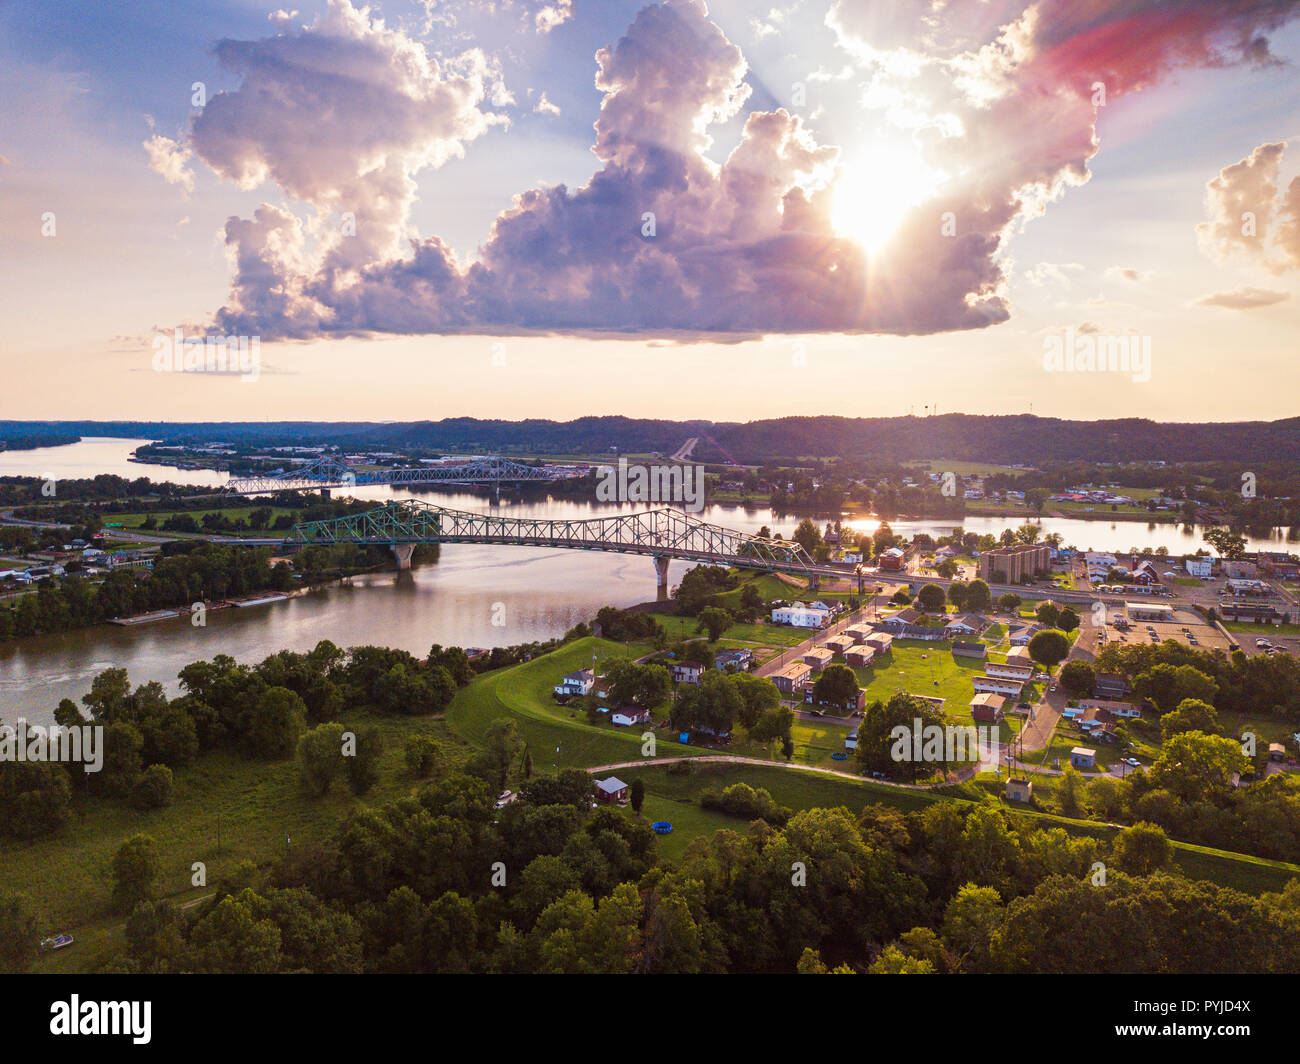 Eine Luftaufnahme der Konvergenz des Ohio und Kanawha Rivers in Point Pleasant, West Virginia unter der untergehenden Sonne. Stockfoto